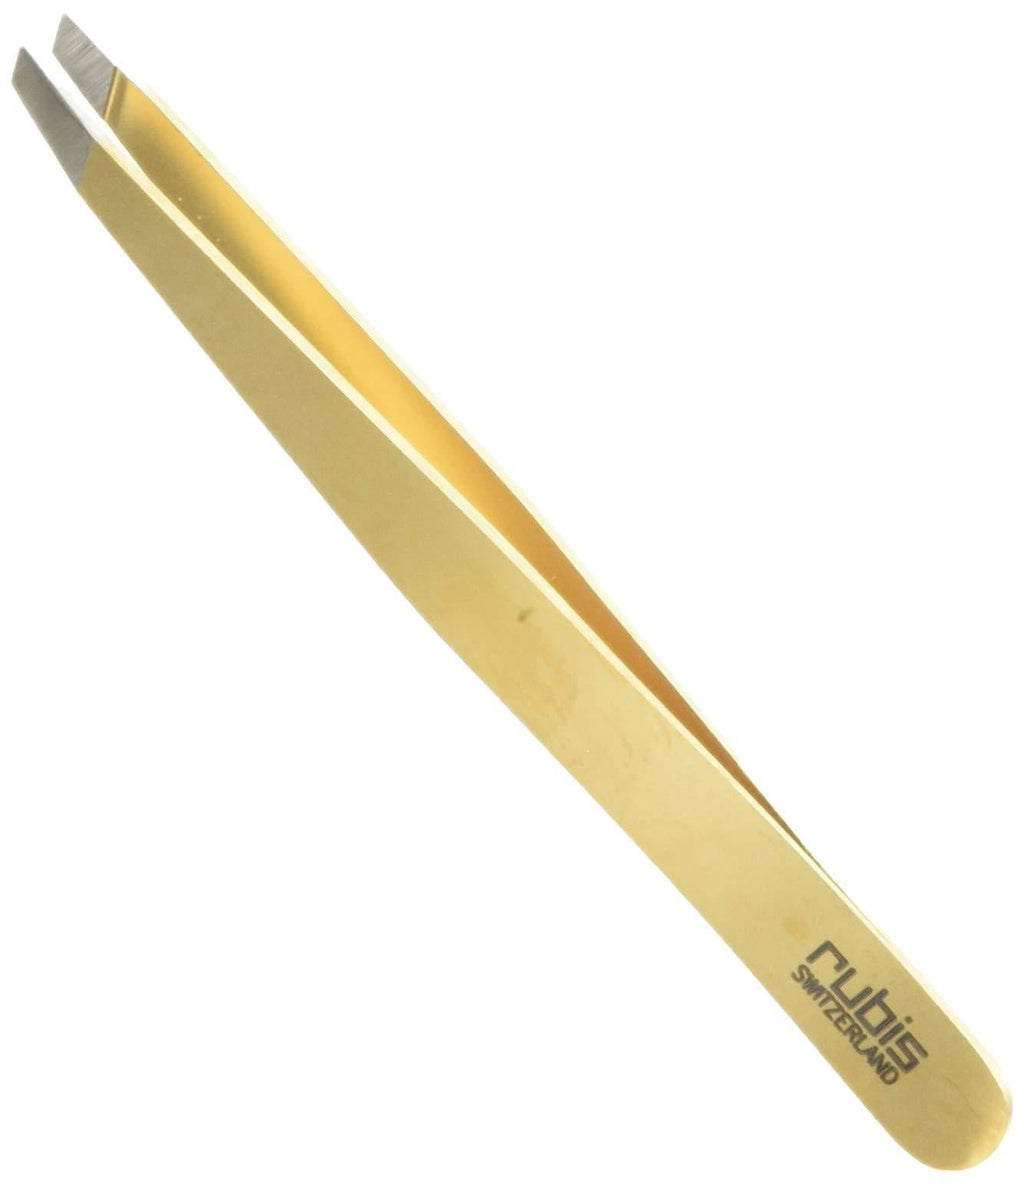 Rubis Switzerland Gold Slant Tweezer 1K1.03 - LeoForward Australia